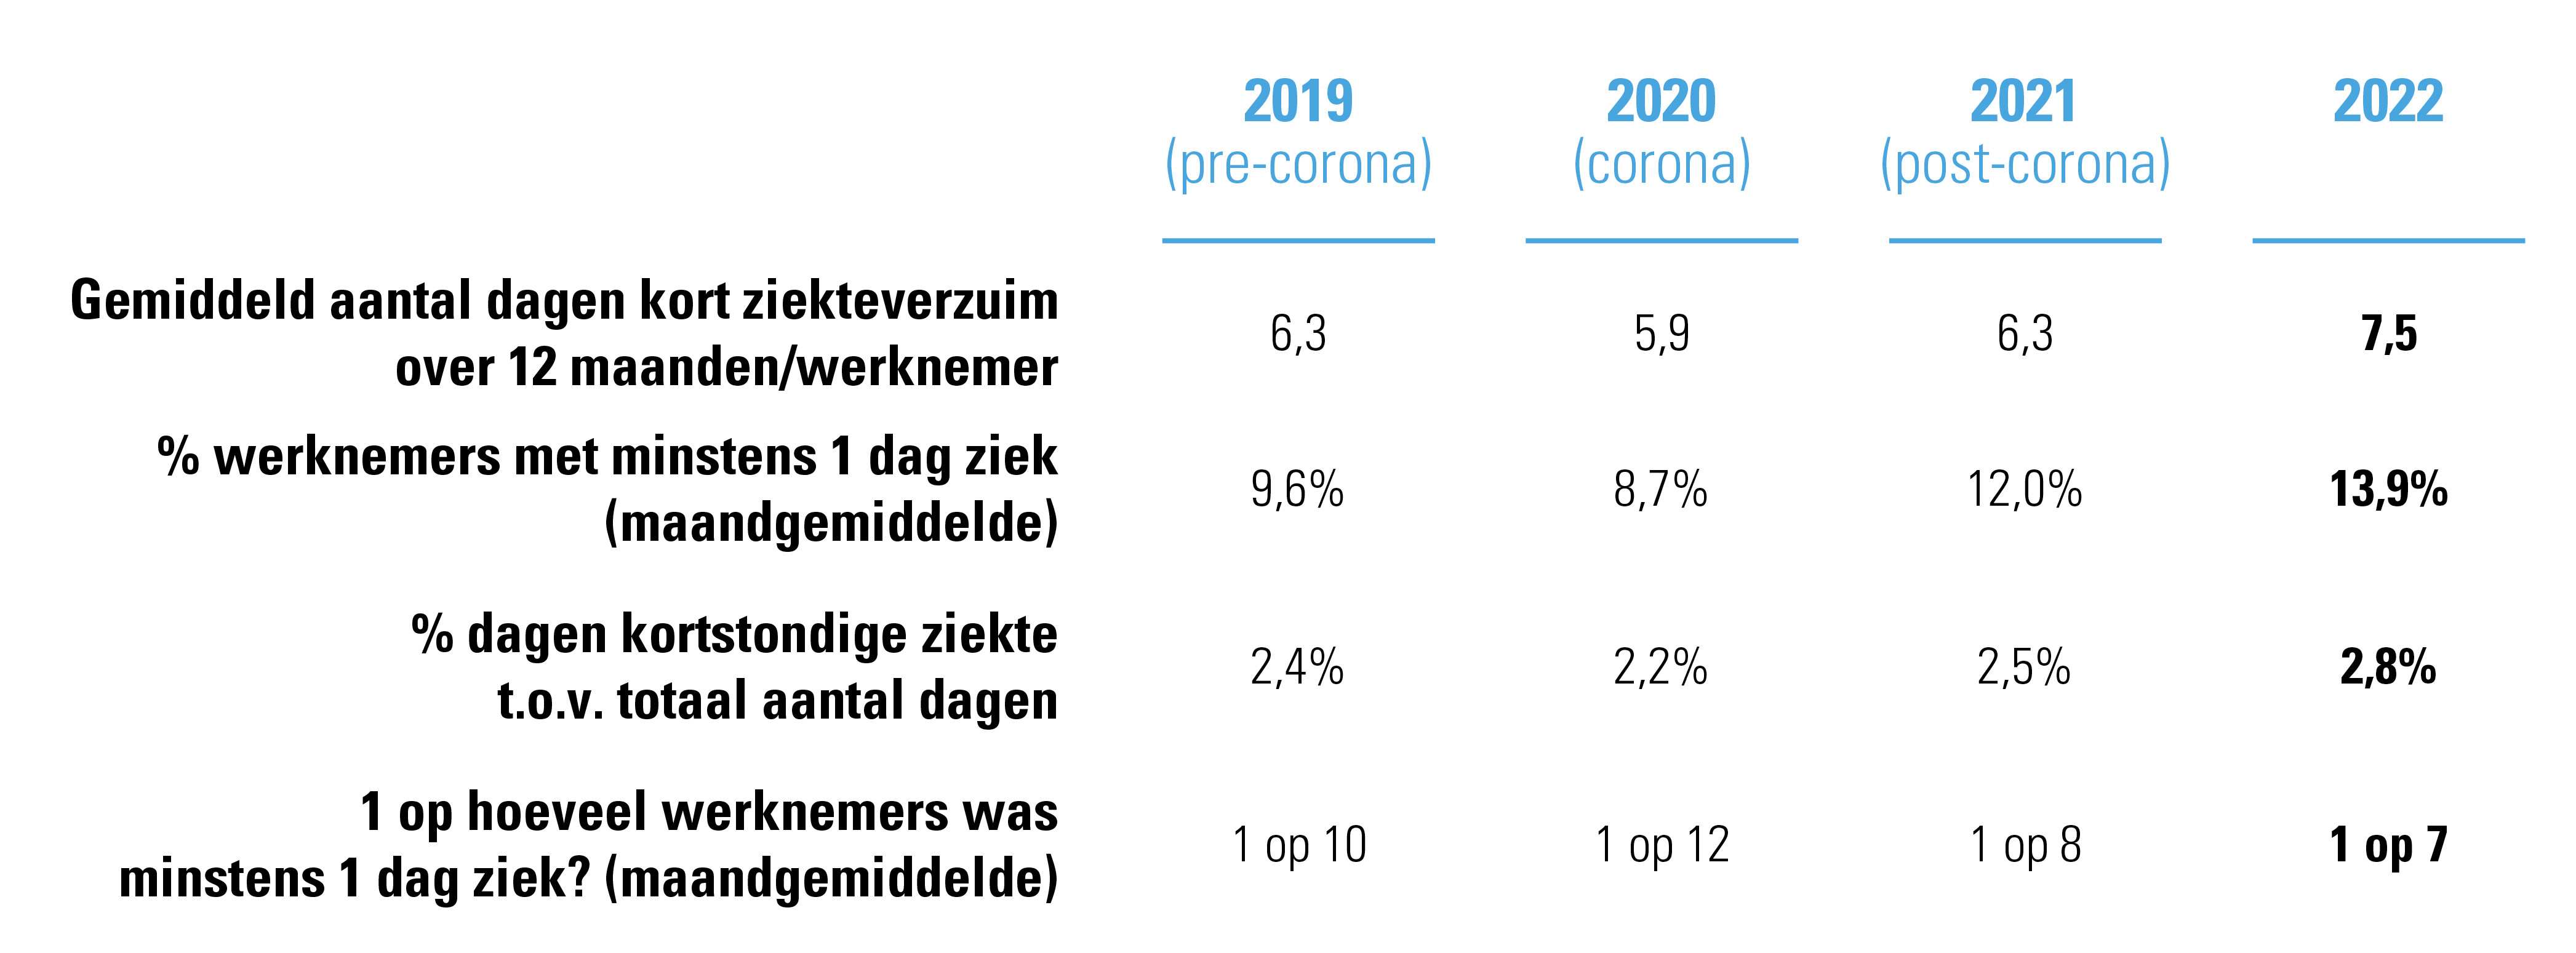 kort ziekteverzuim 2022